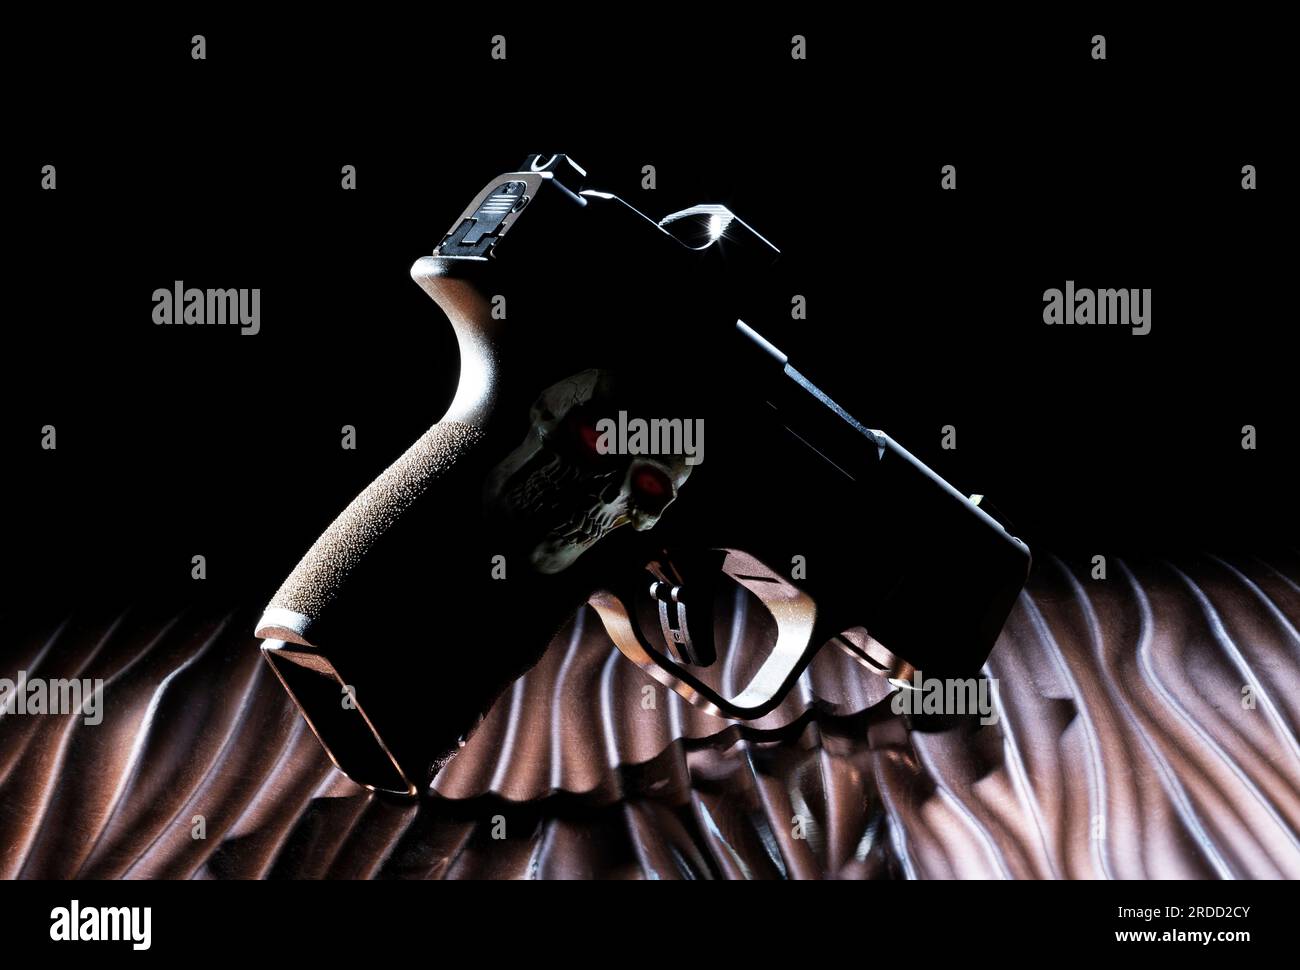 Silhouette de pistolet sur une surface ondulée avec un crâne humain et des yeux rouges sur sa poignée Banque D'Images